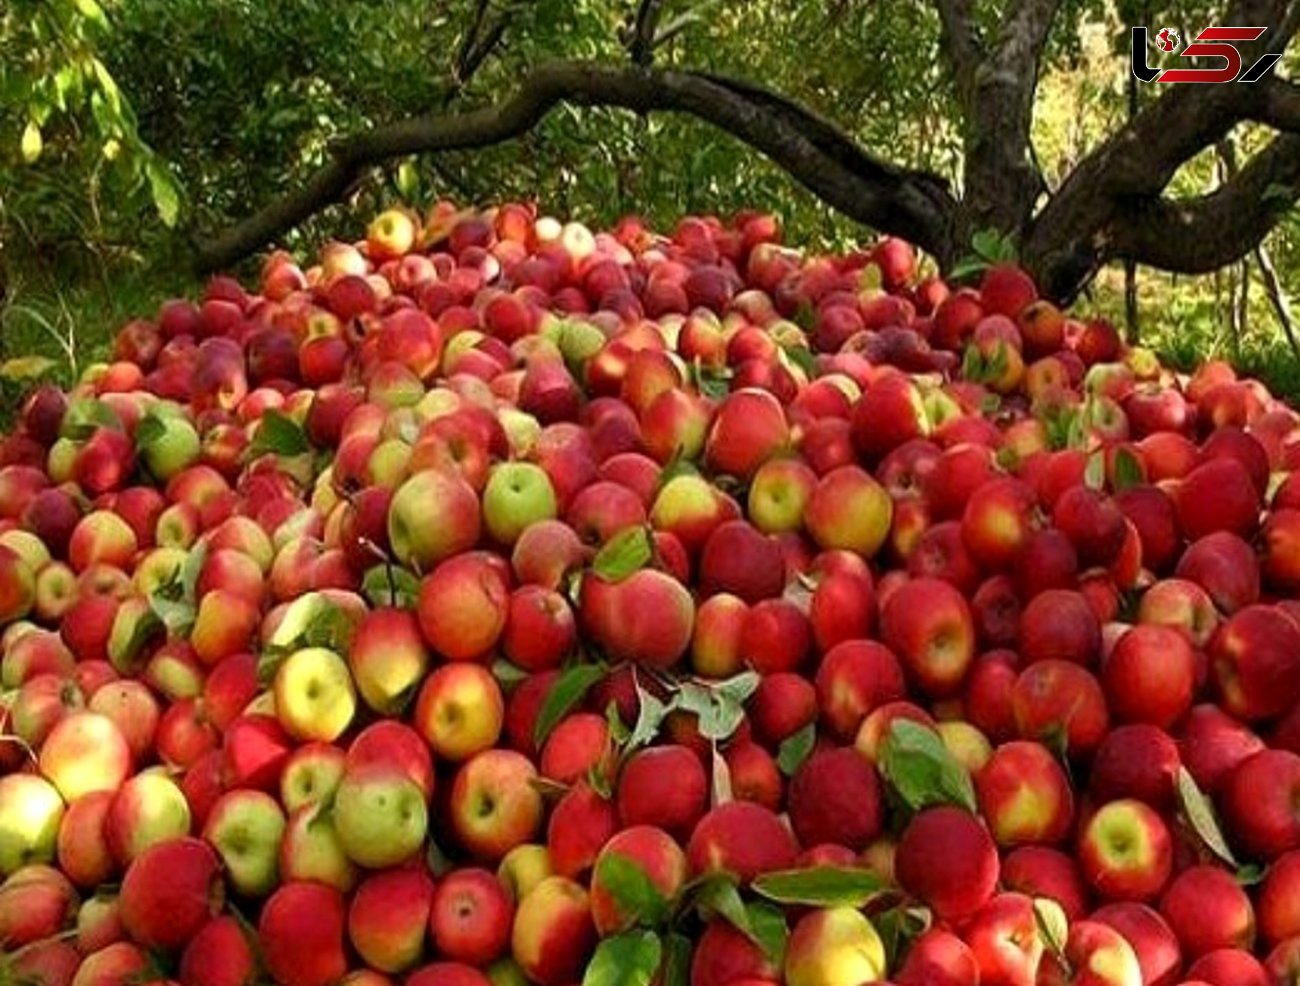 صادرات سیب به روسیه و قزاقستان با کشتی اختصاصی / مشکلات صادرات سیب از آذربایجان غربی حل شد